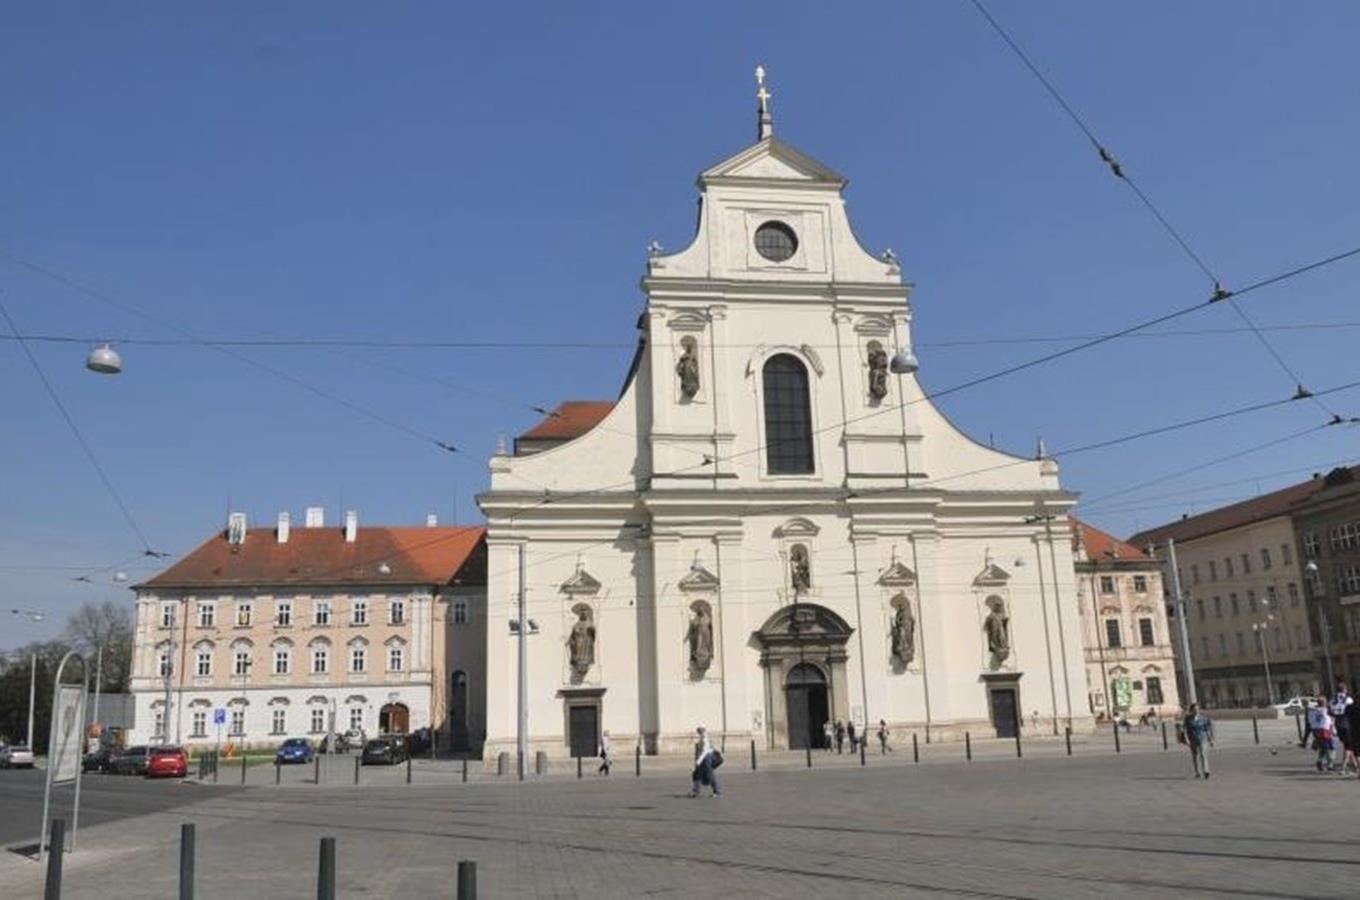 Kostel sv. Tomáše v Brně - dominanta Moravského náměstí